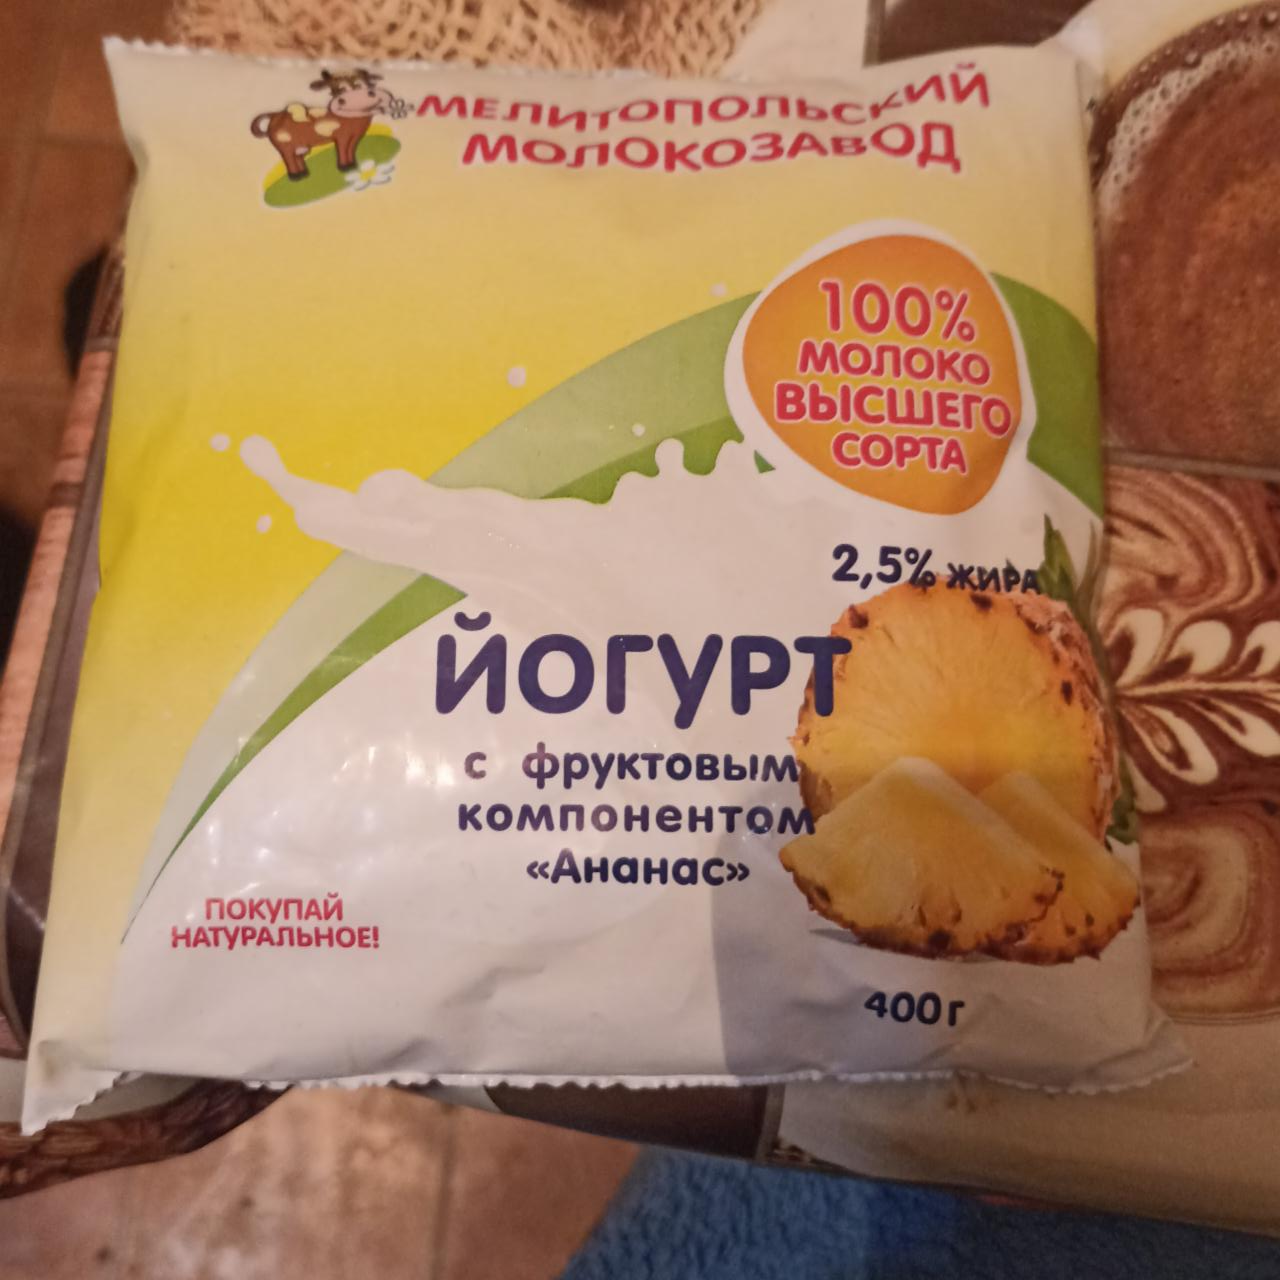 Фото - йогурт с фруктовым компонентом Ананас Мелитопольский молокозавод